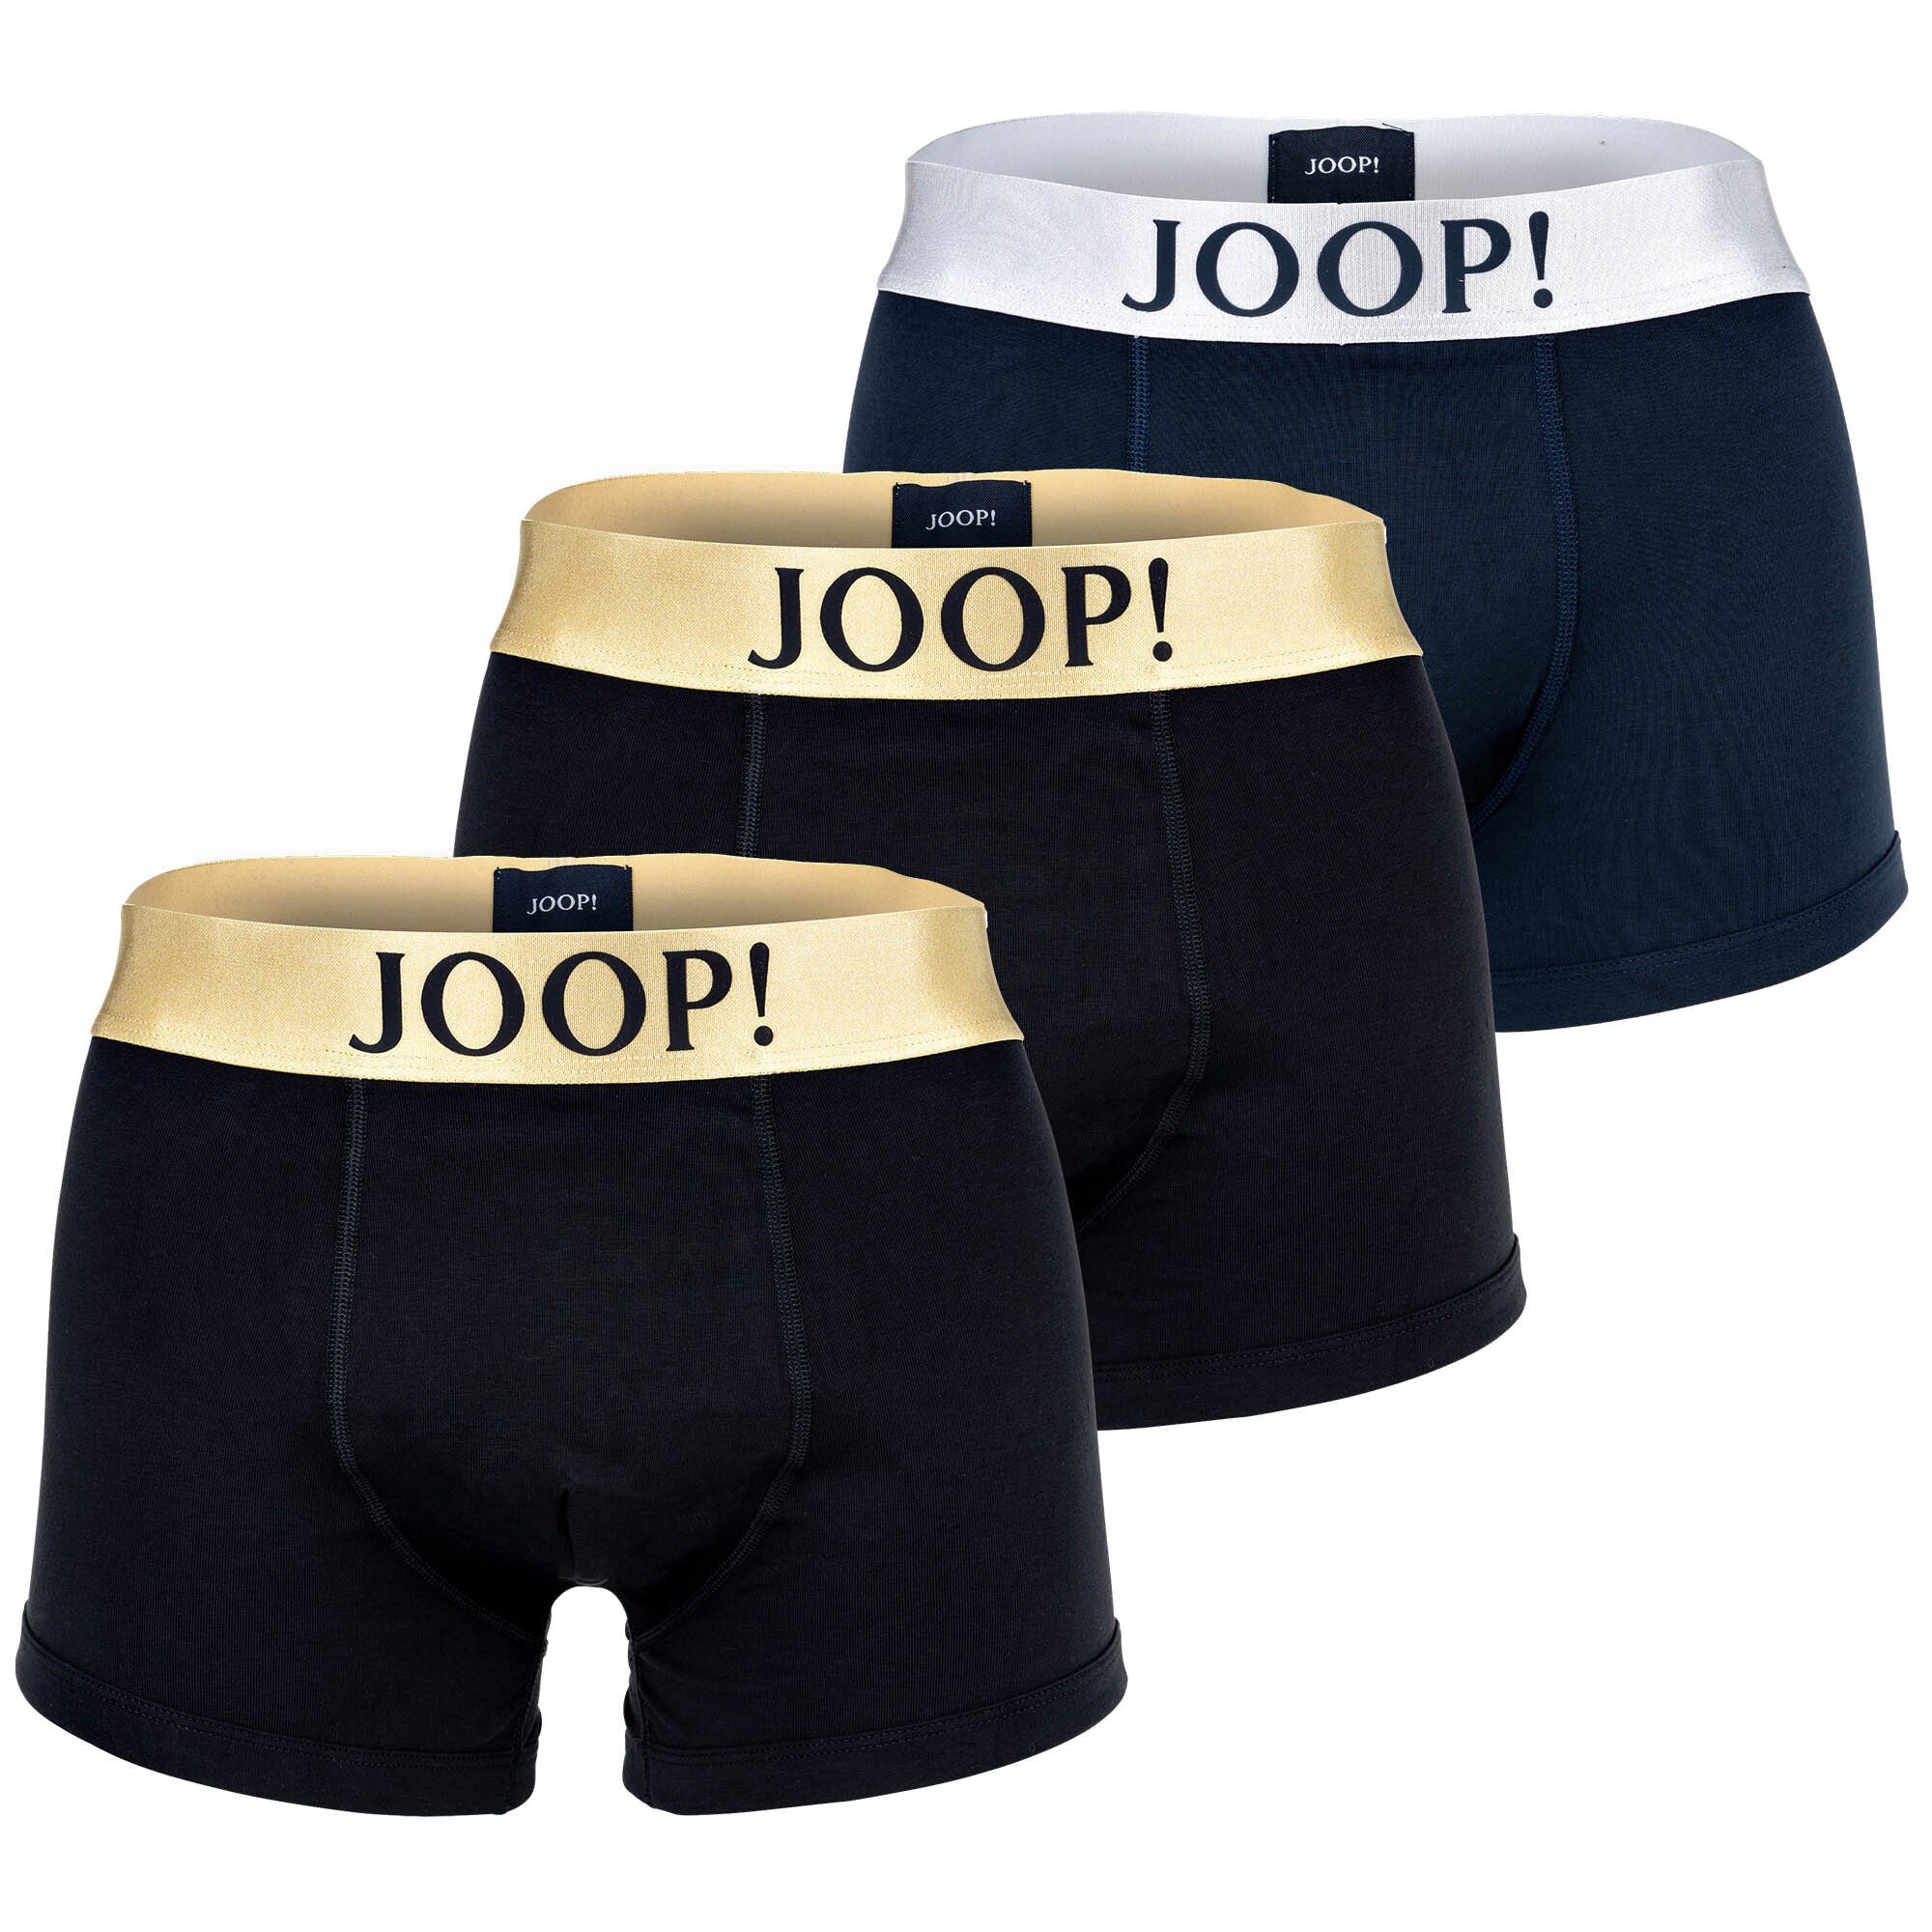 Joop! Boxer Herren Boxershorts 3er Pack - Fine Cotton